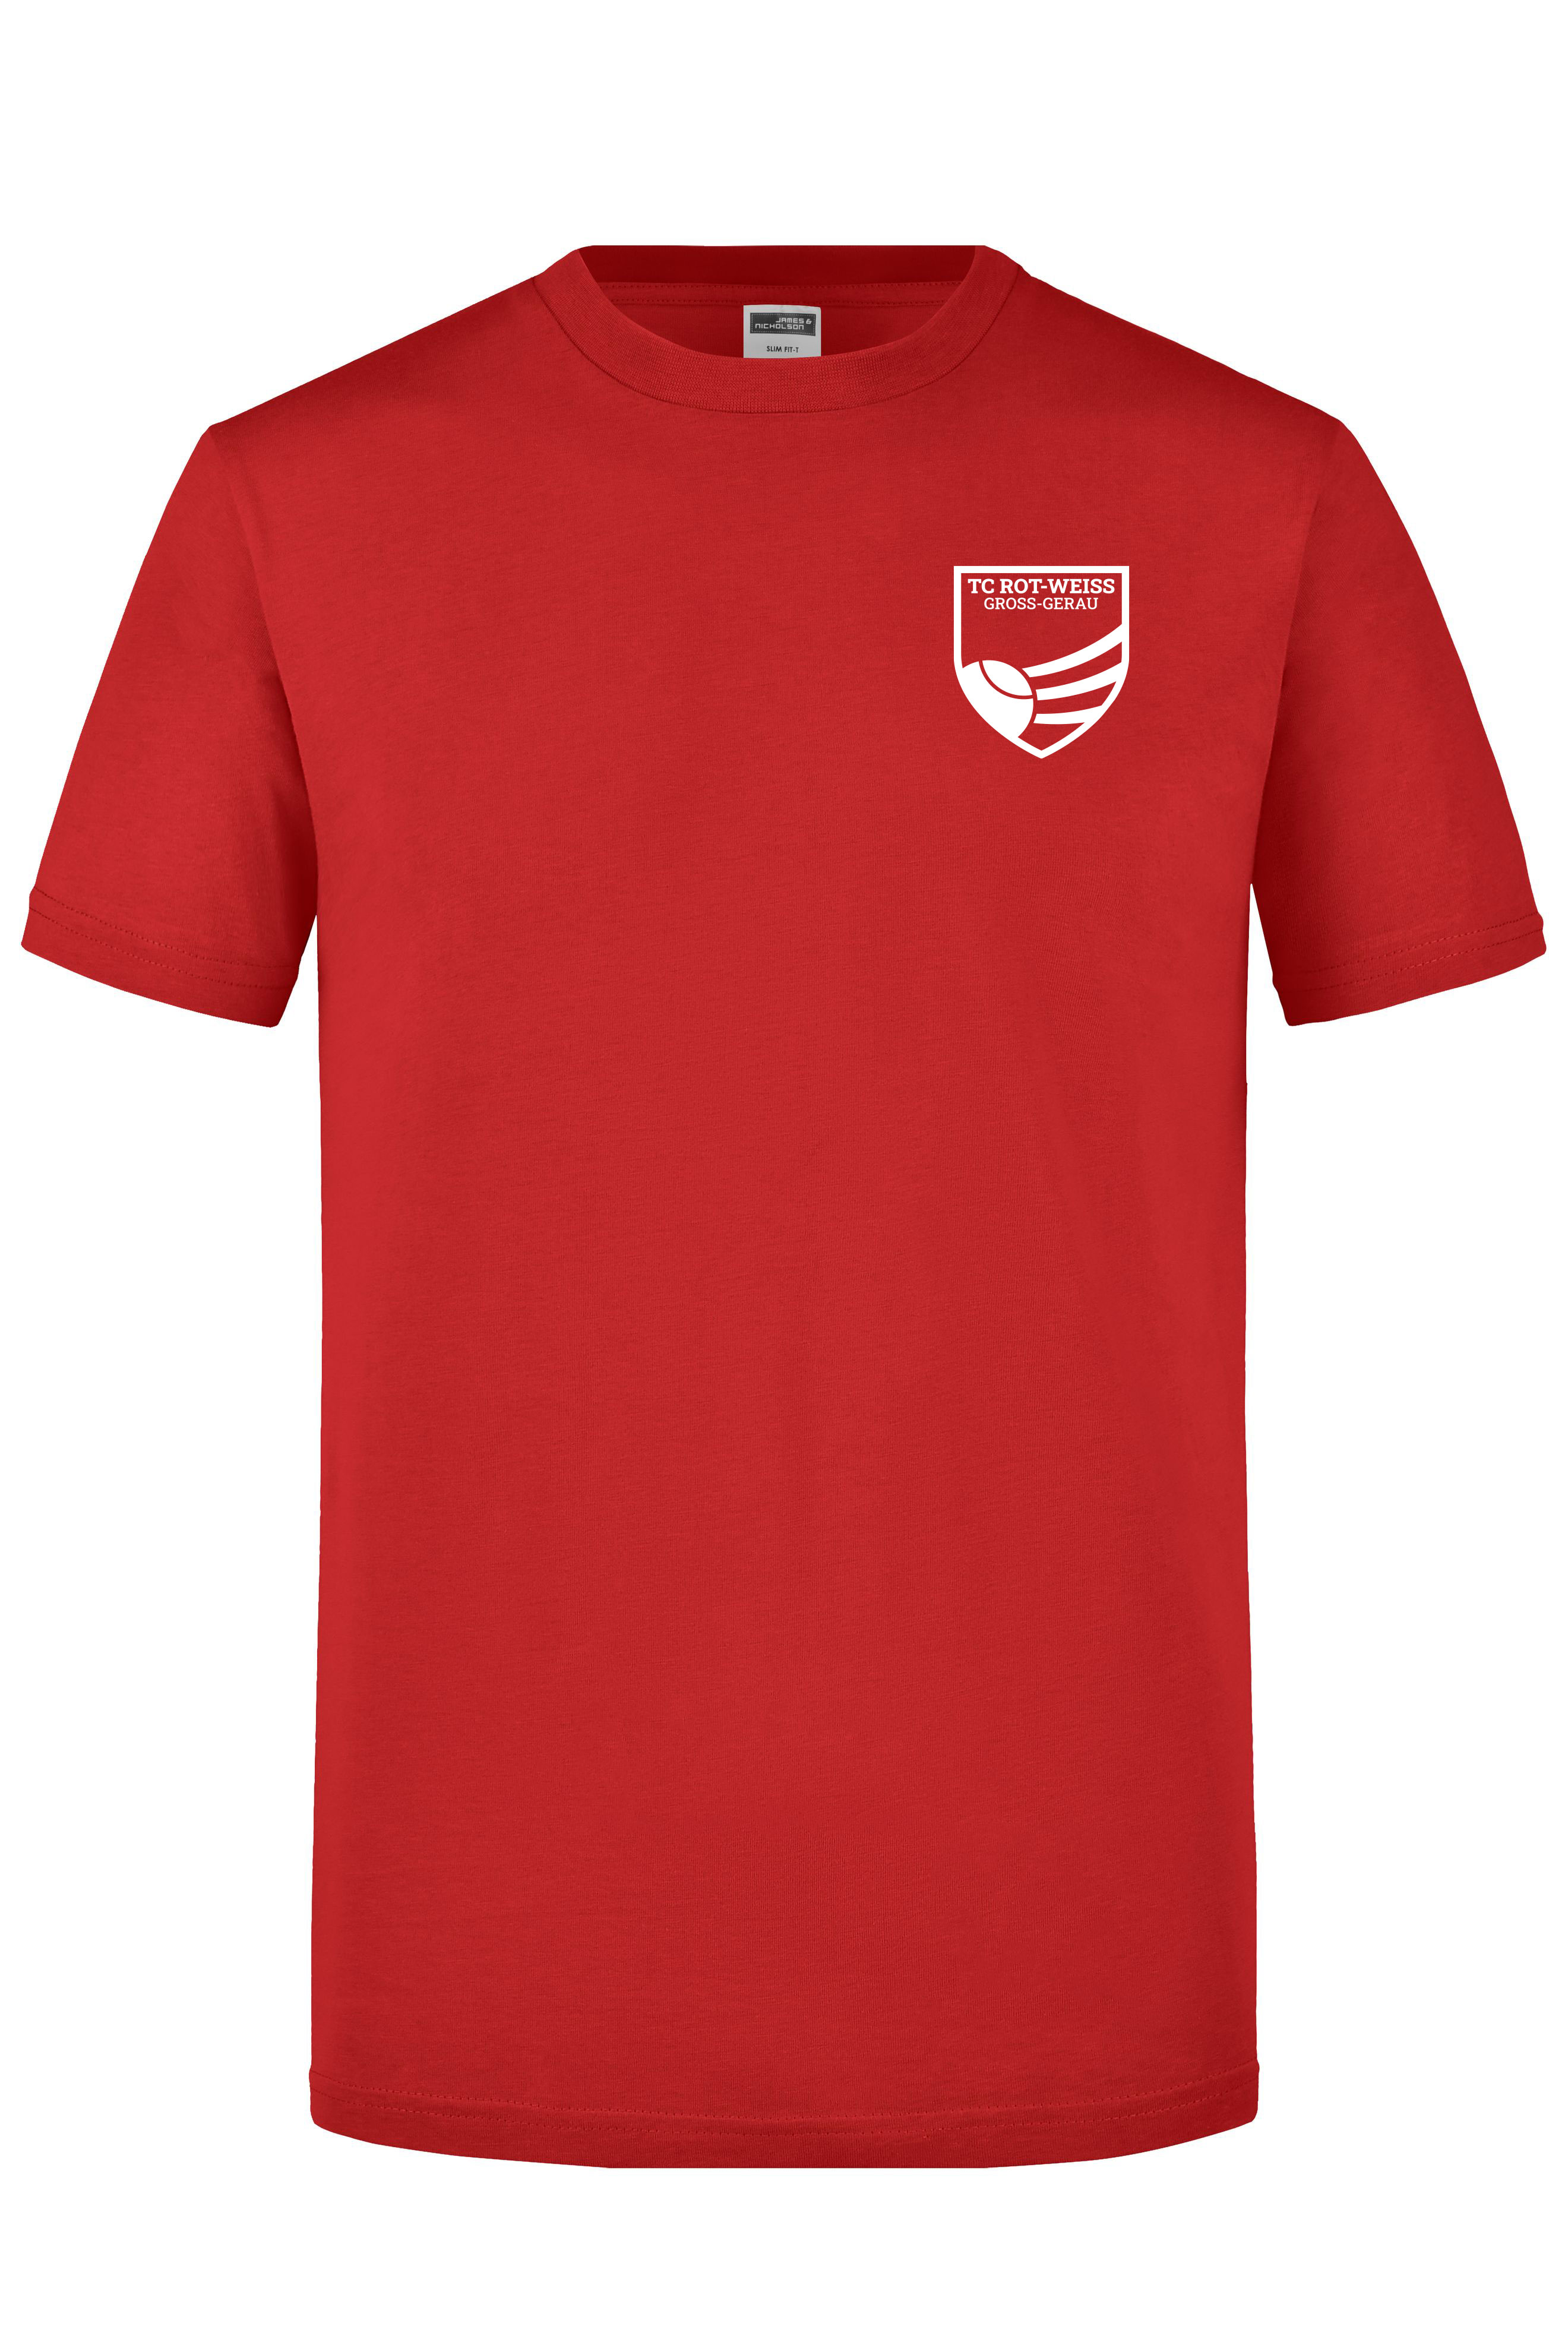 TC Rot-Weiss - Vorteil Dein Name - T-Shirt rot